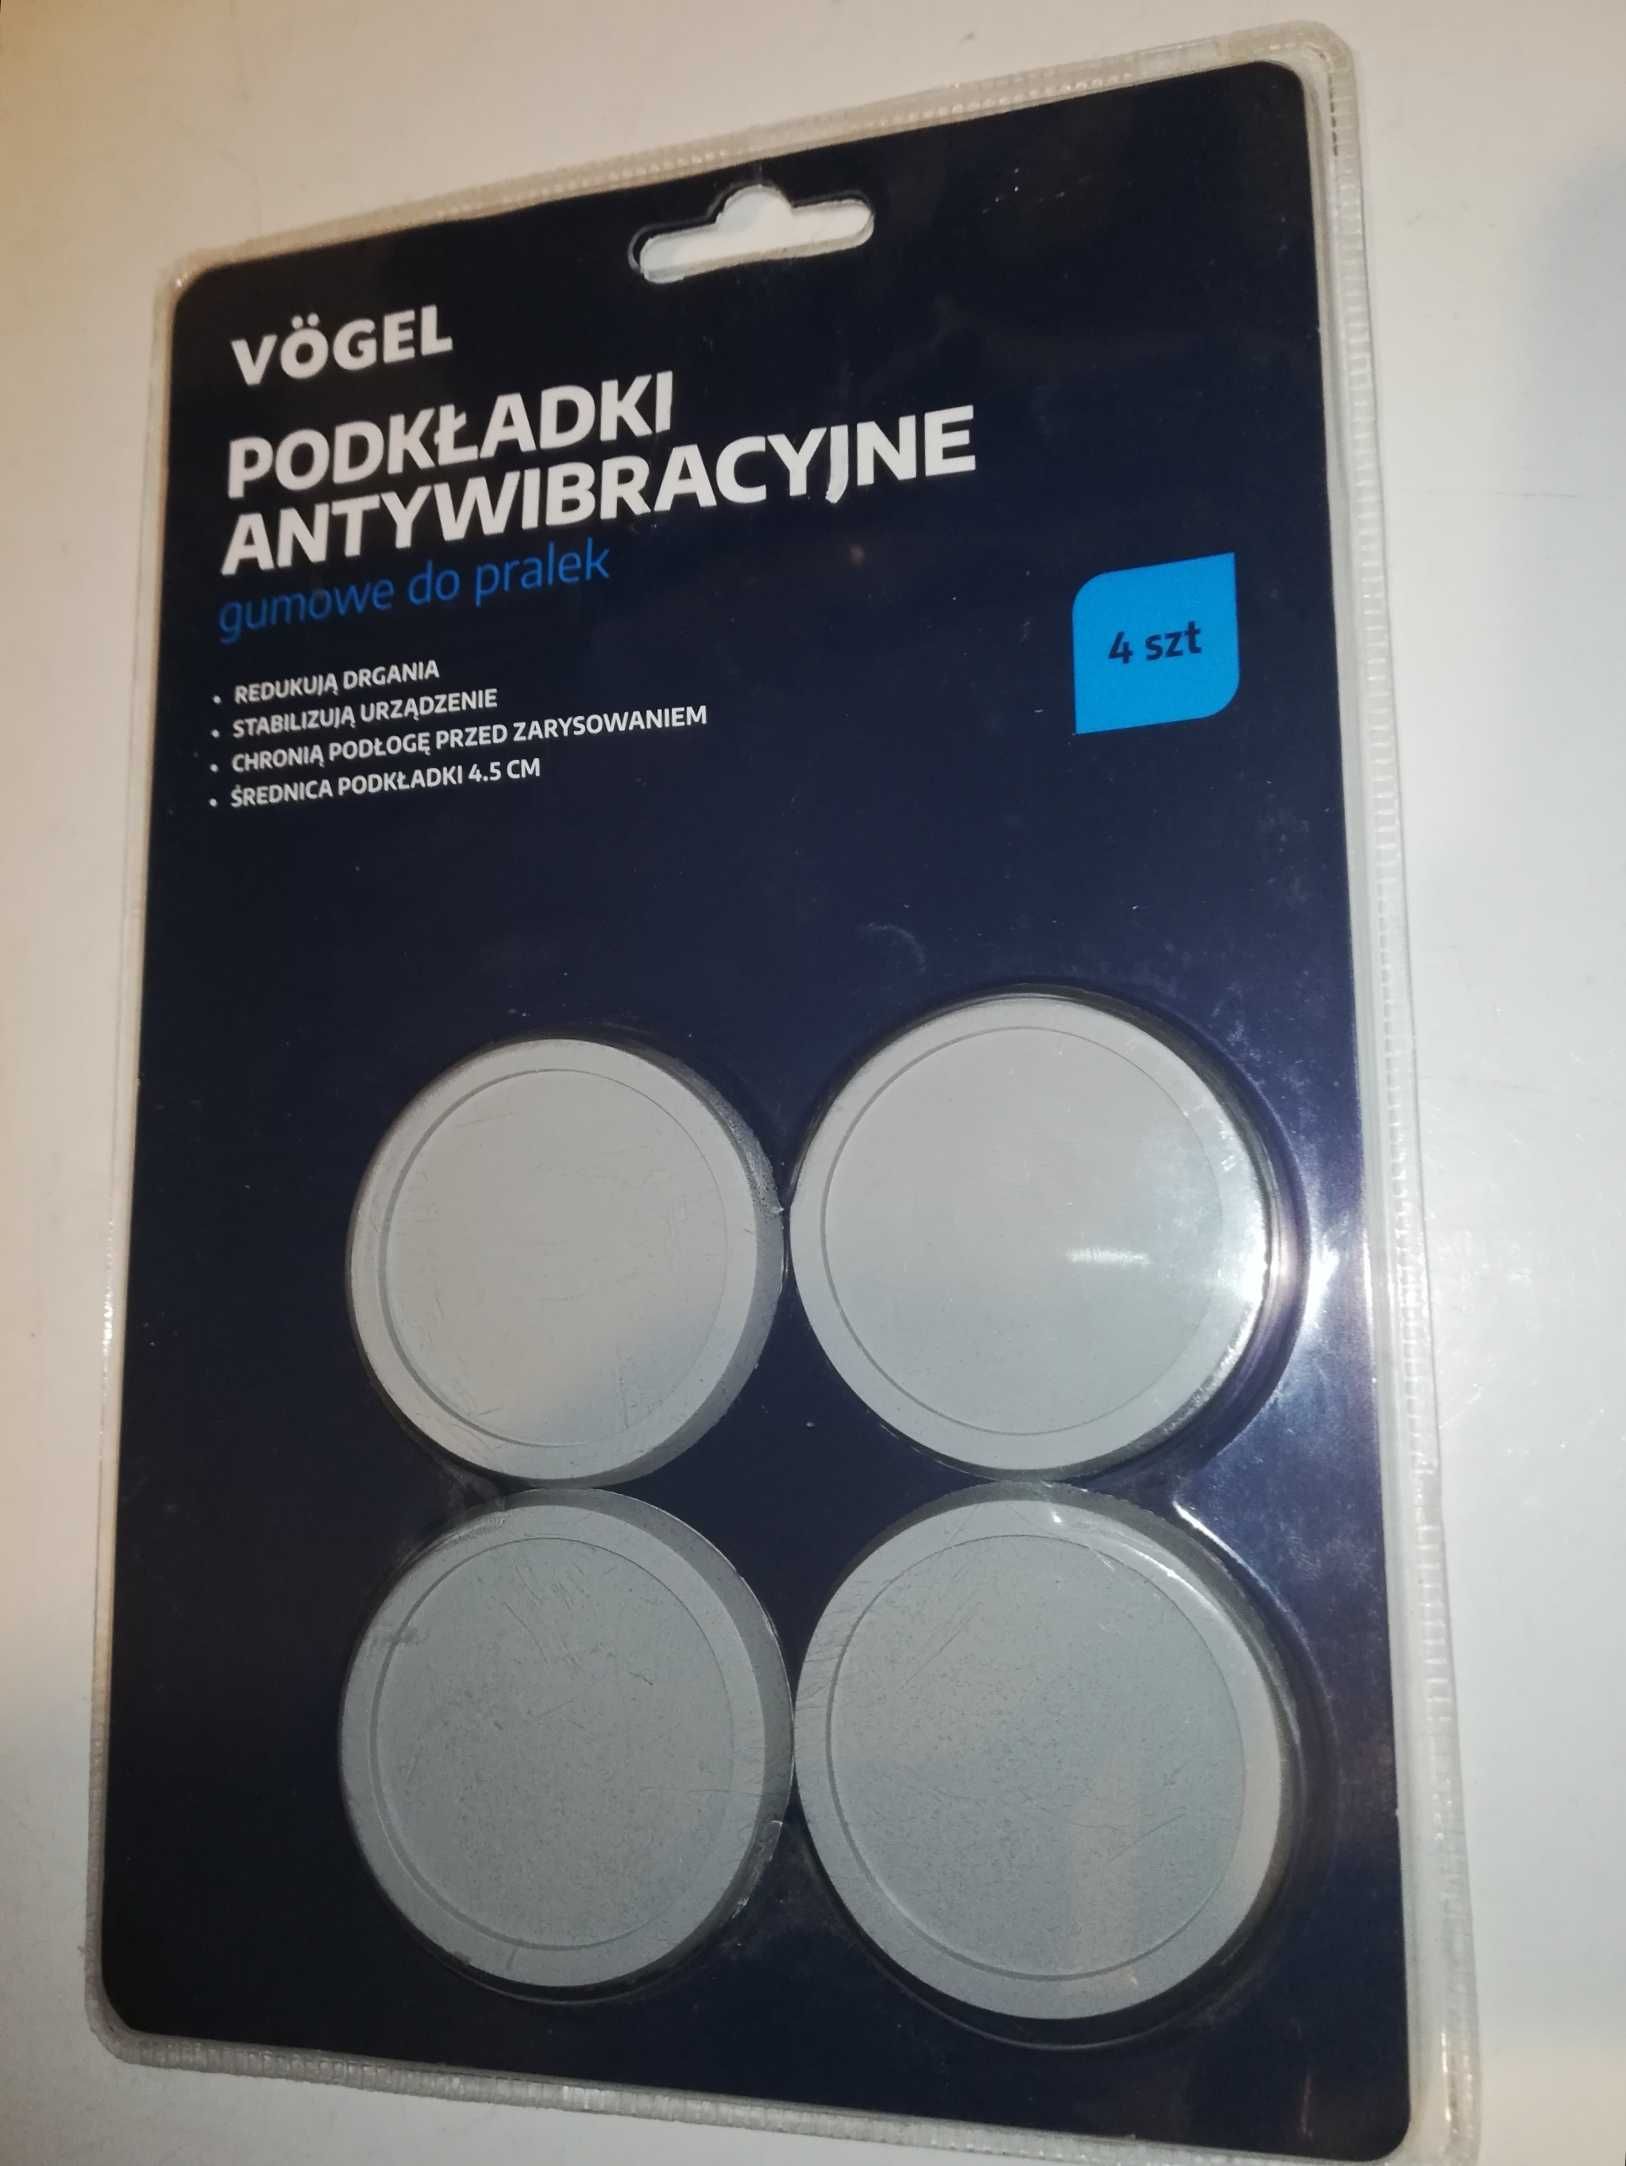 Podkładki antywibracyjne do pralek Vogel - Nowe